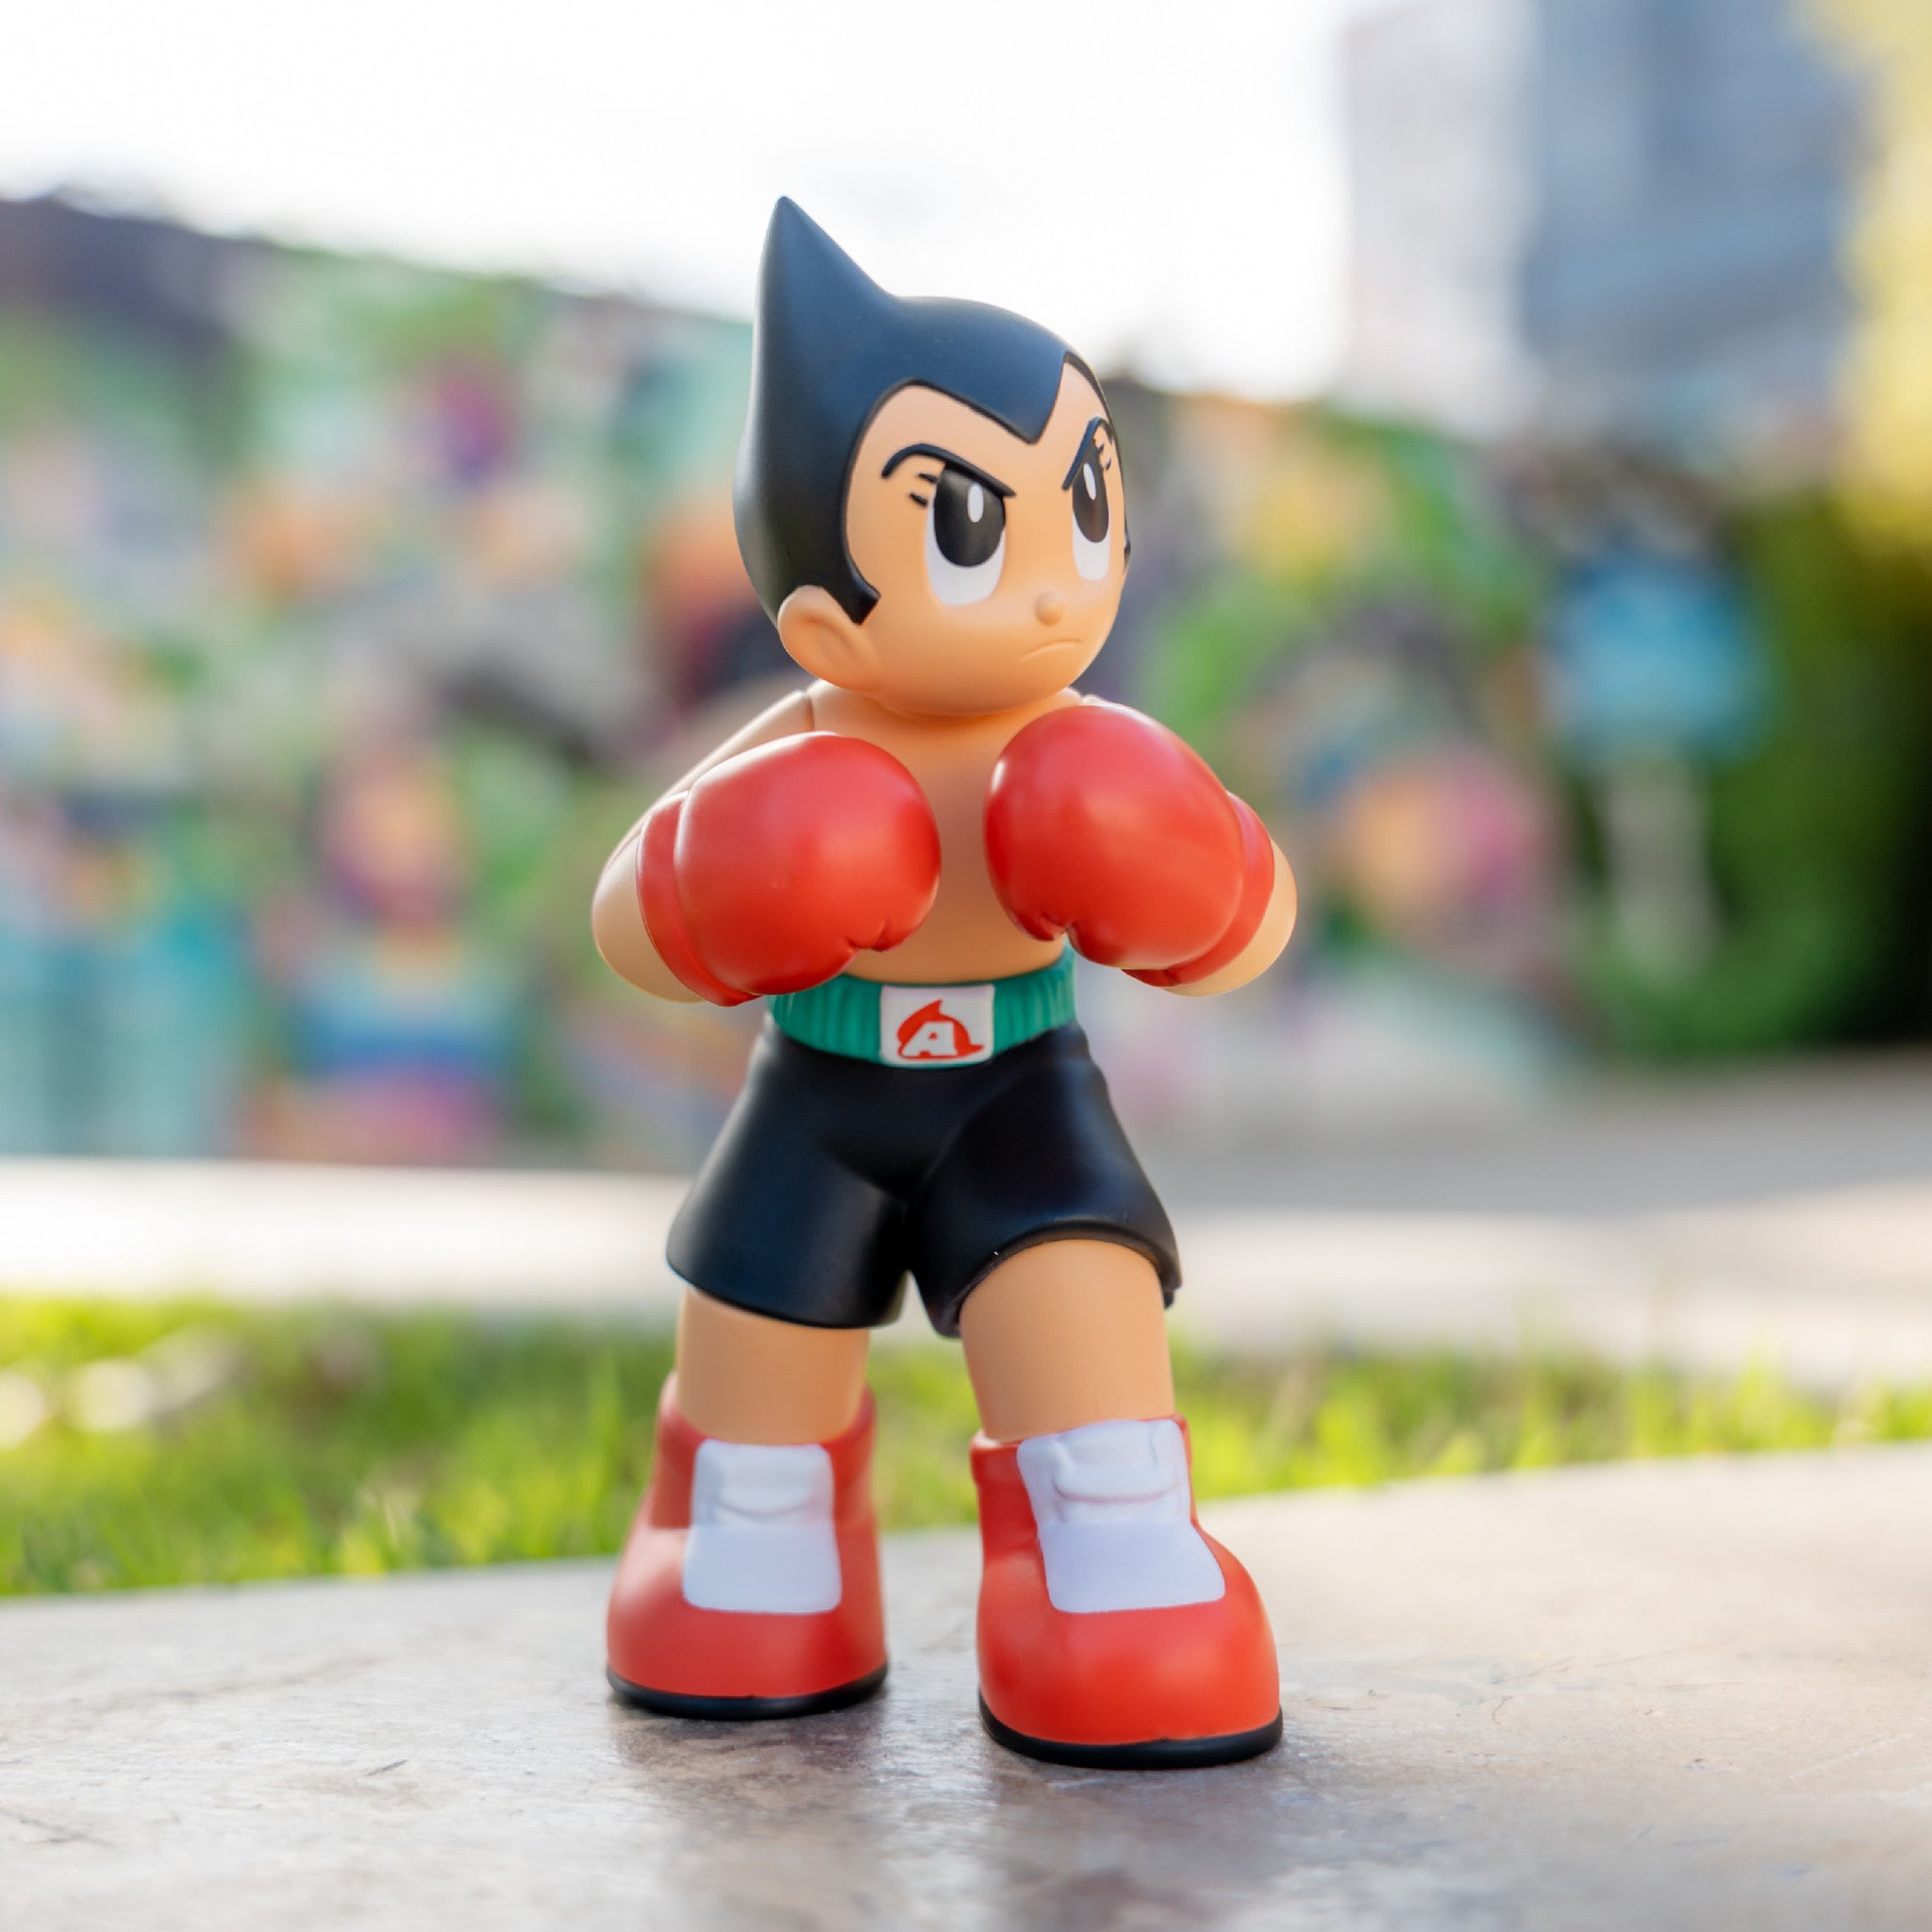 Astro Boy Boxer - OG 6 inch - Wynwood Walls Shop